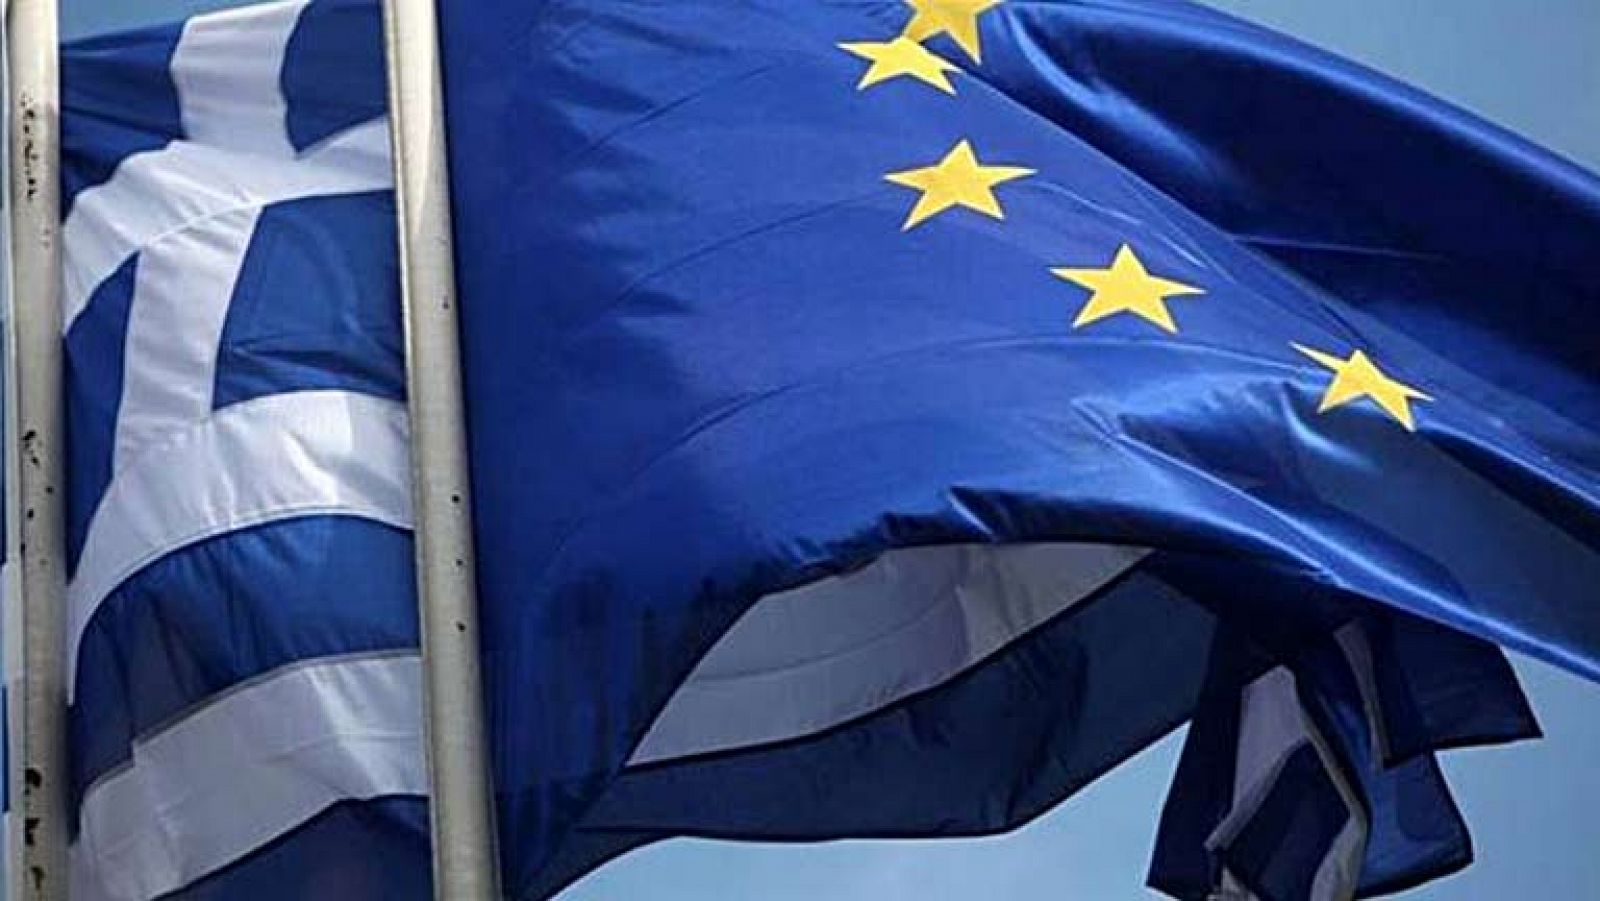 Grecia asume este 1 de enero la Presidencia rotatoria del Consejo de la UE